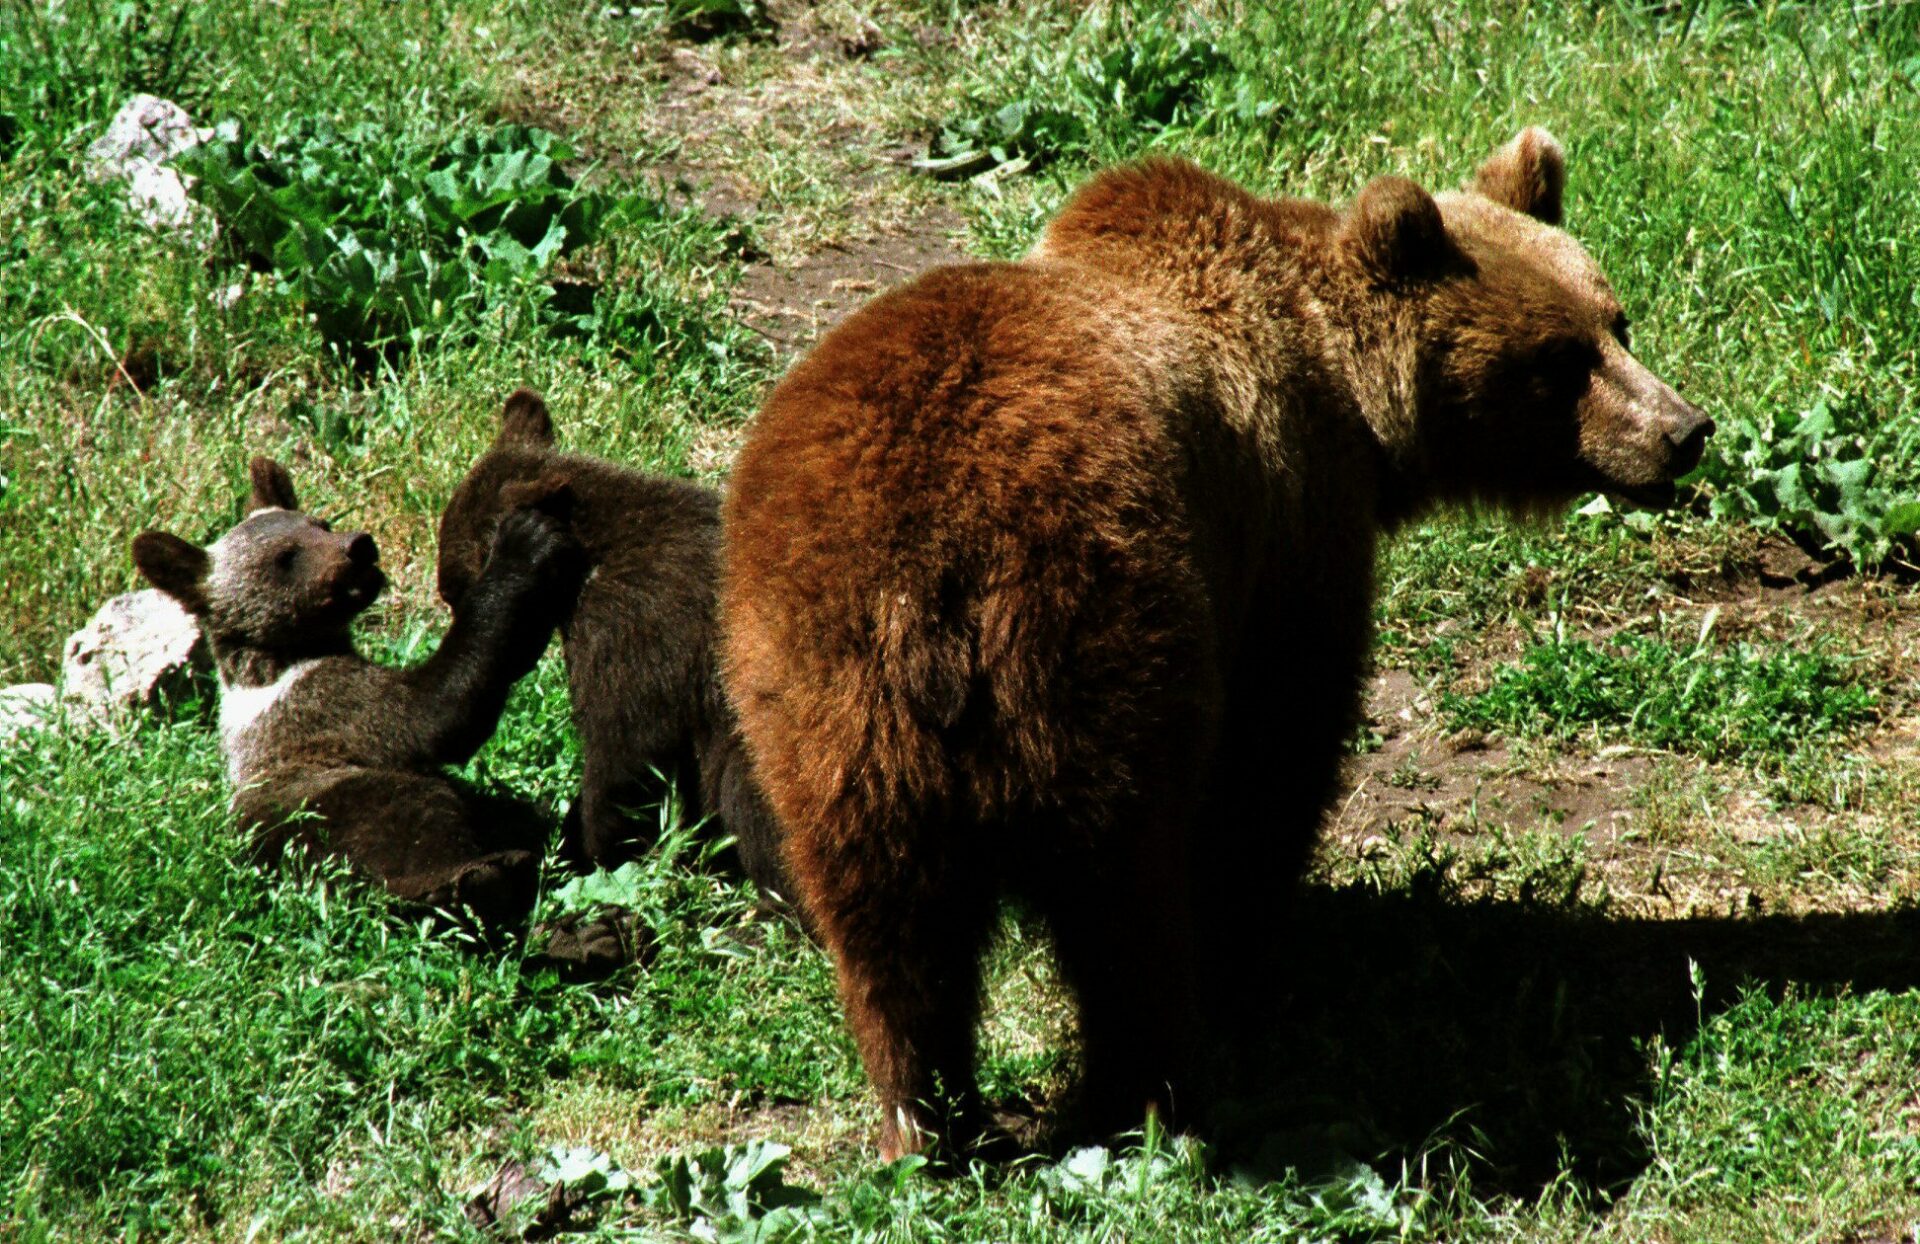 ¡Grrr! Región de Japón apuesta por el rock para evitar ataques de osos